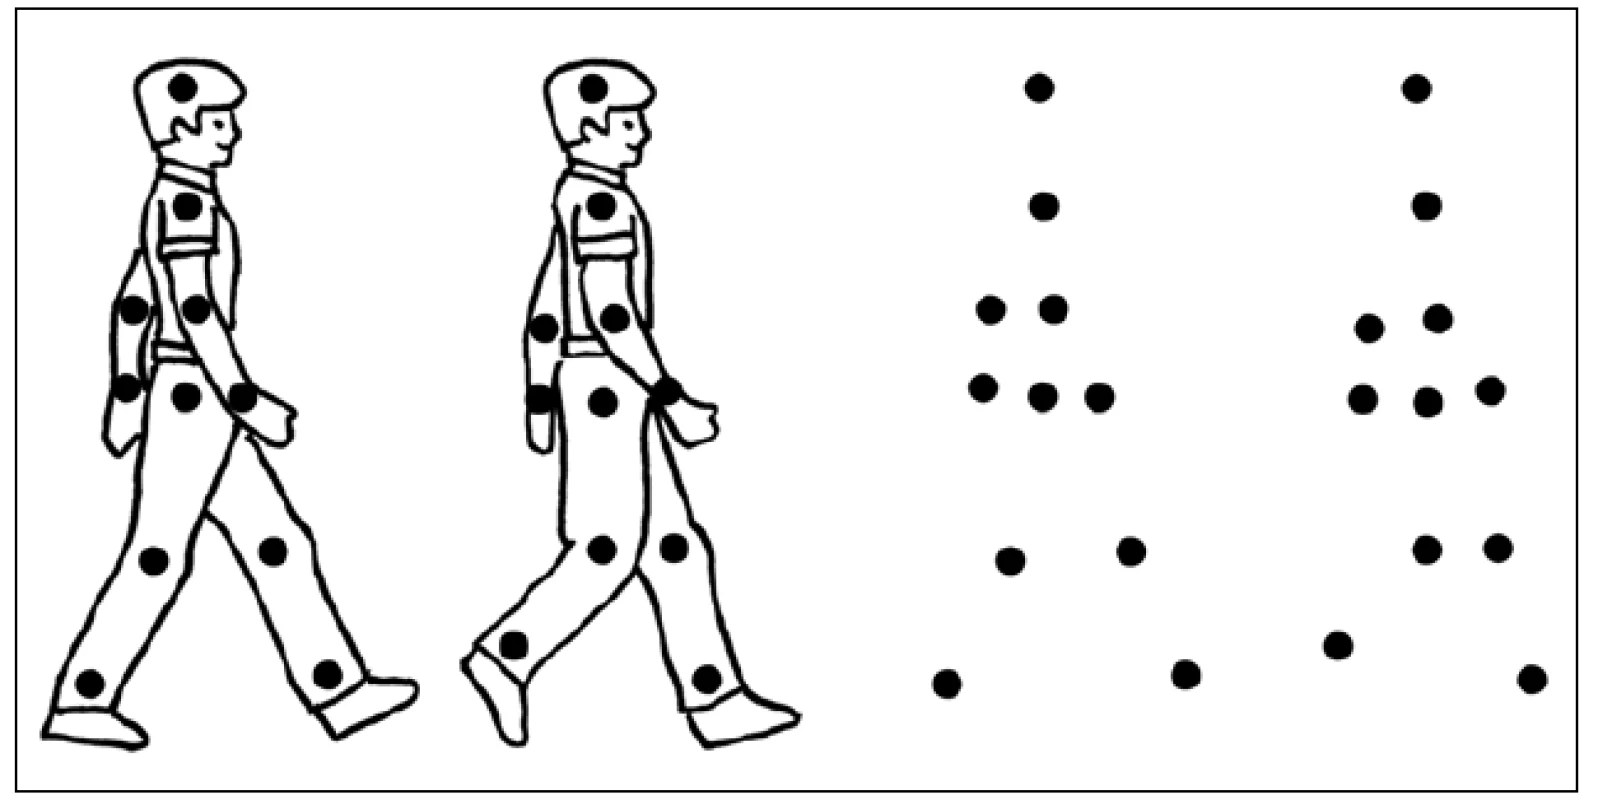 Příklad úlohy k testování percepce biologického pohybu – pohybující se body imitují pohyby hlavních kloubů imaginární postavy.